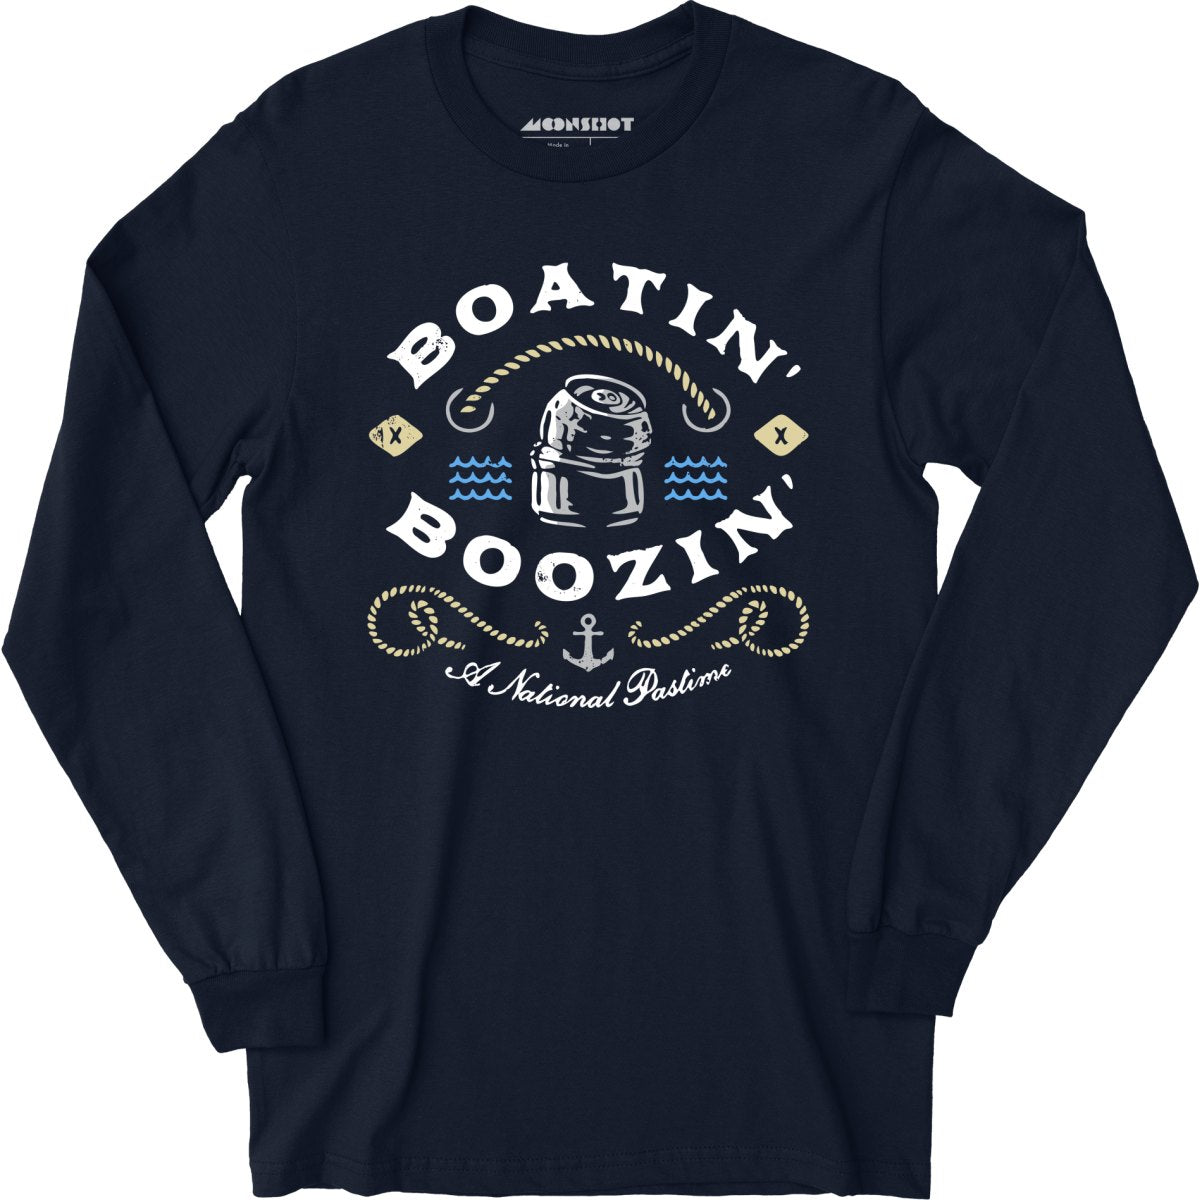 Boatin' & Boozin' - Long Sleeve T-Shirt